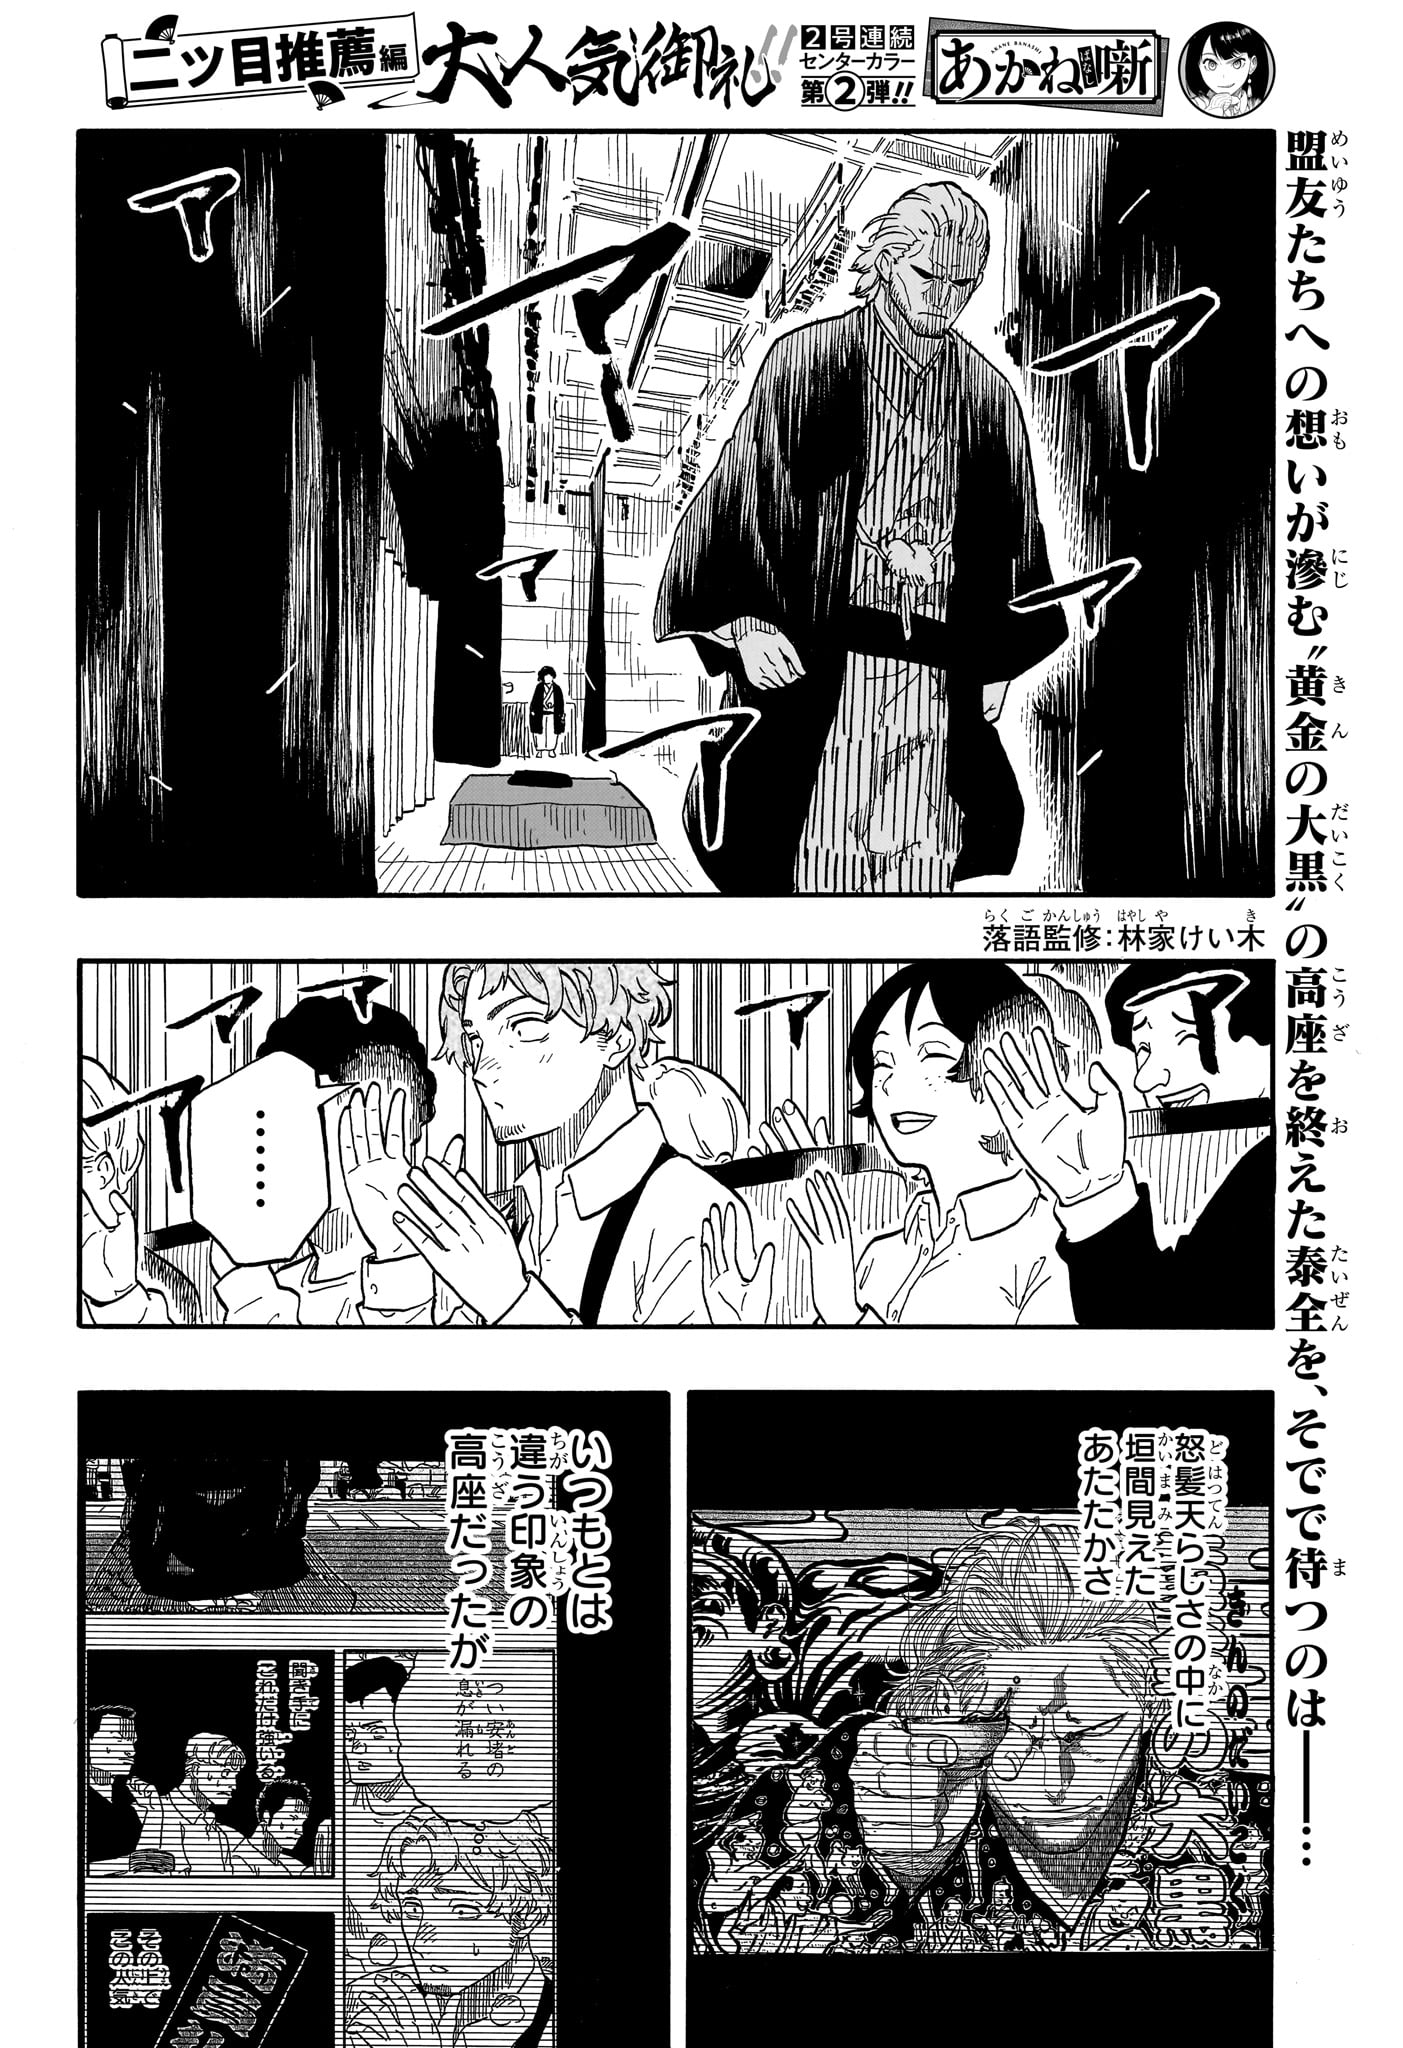 Akane-Banashi - Chapter 105 - Page 2